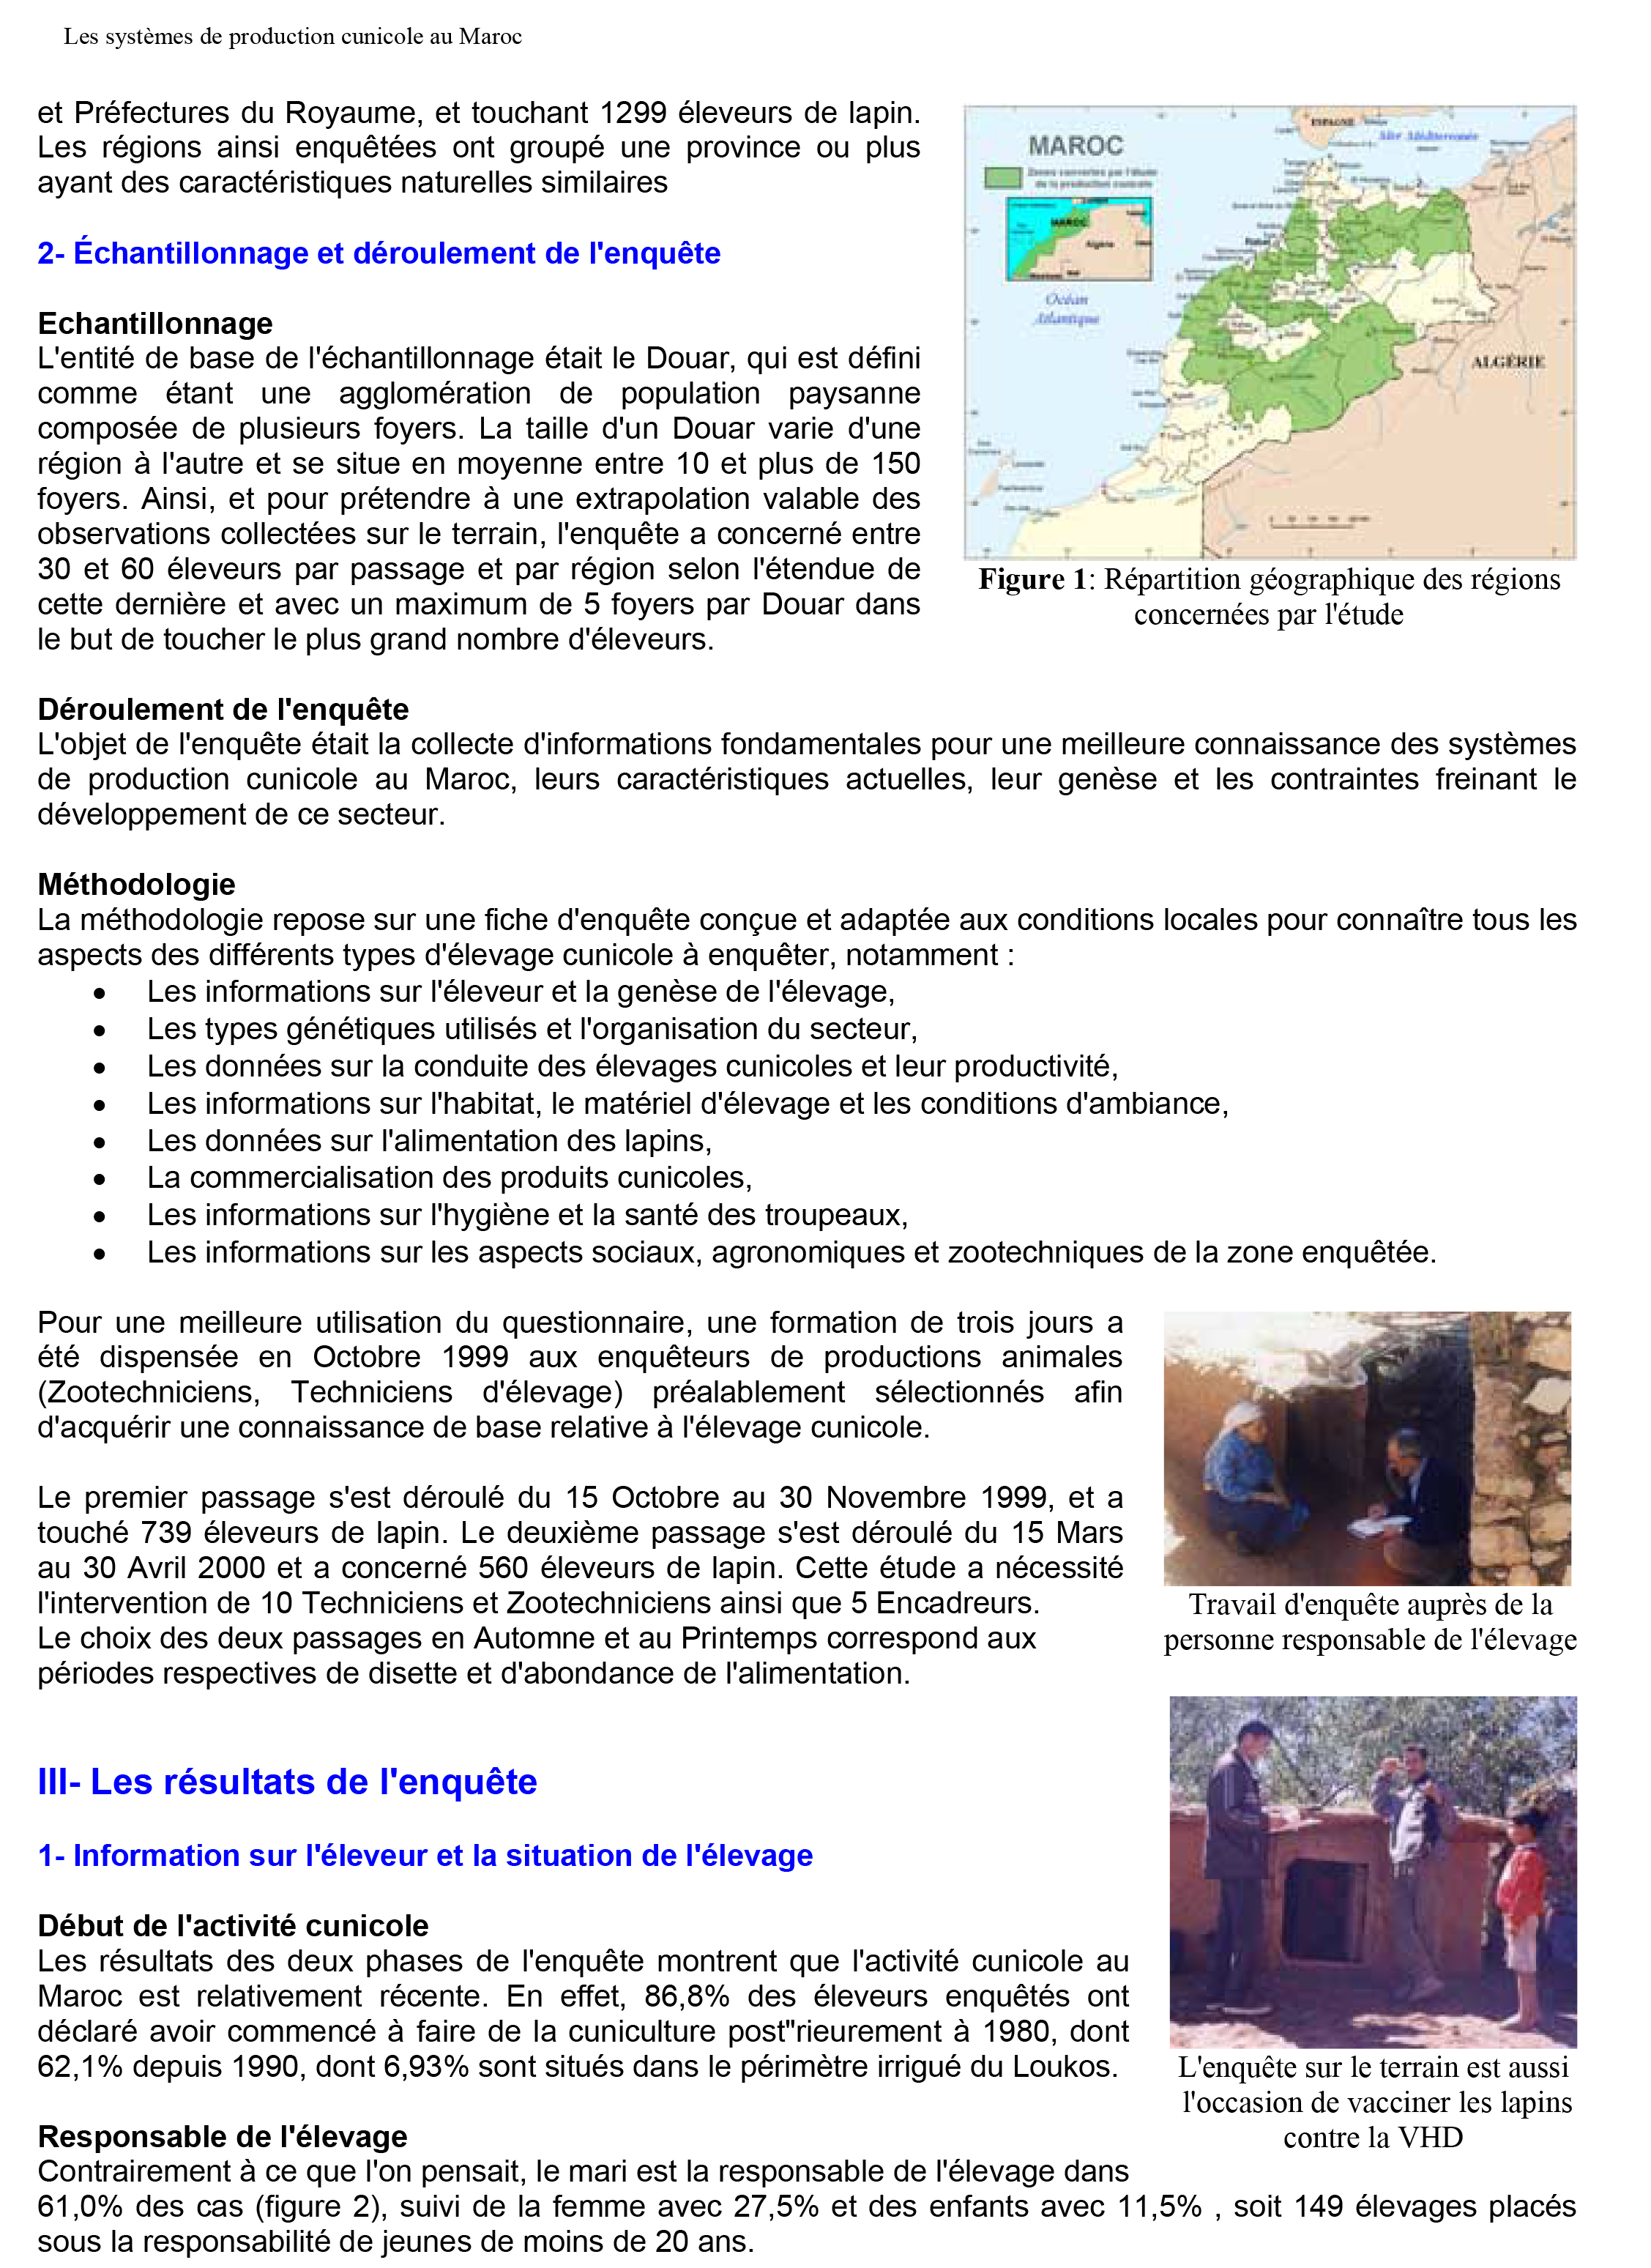 Etude sur les systèmes de production cunicole au Maroc